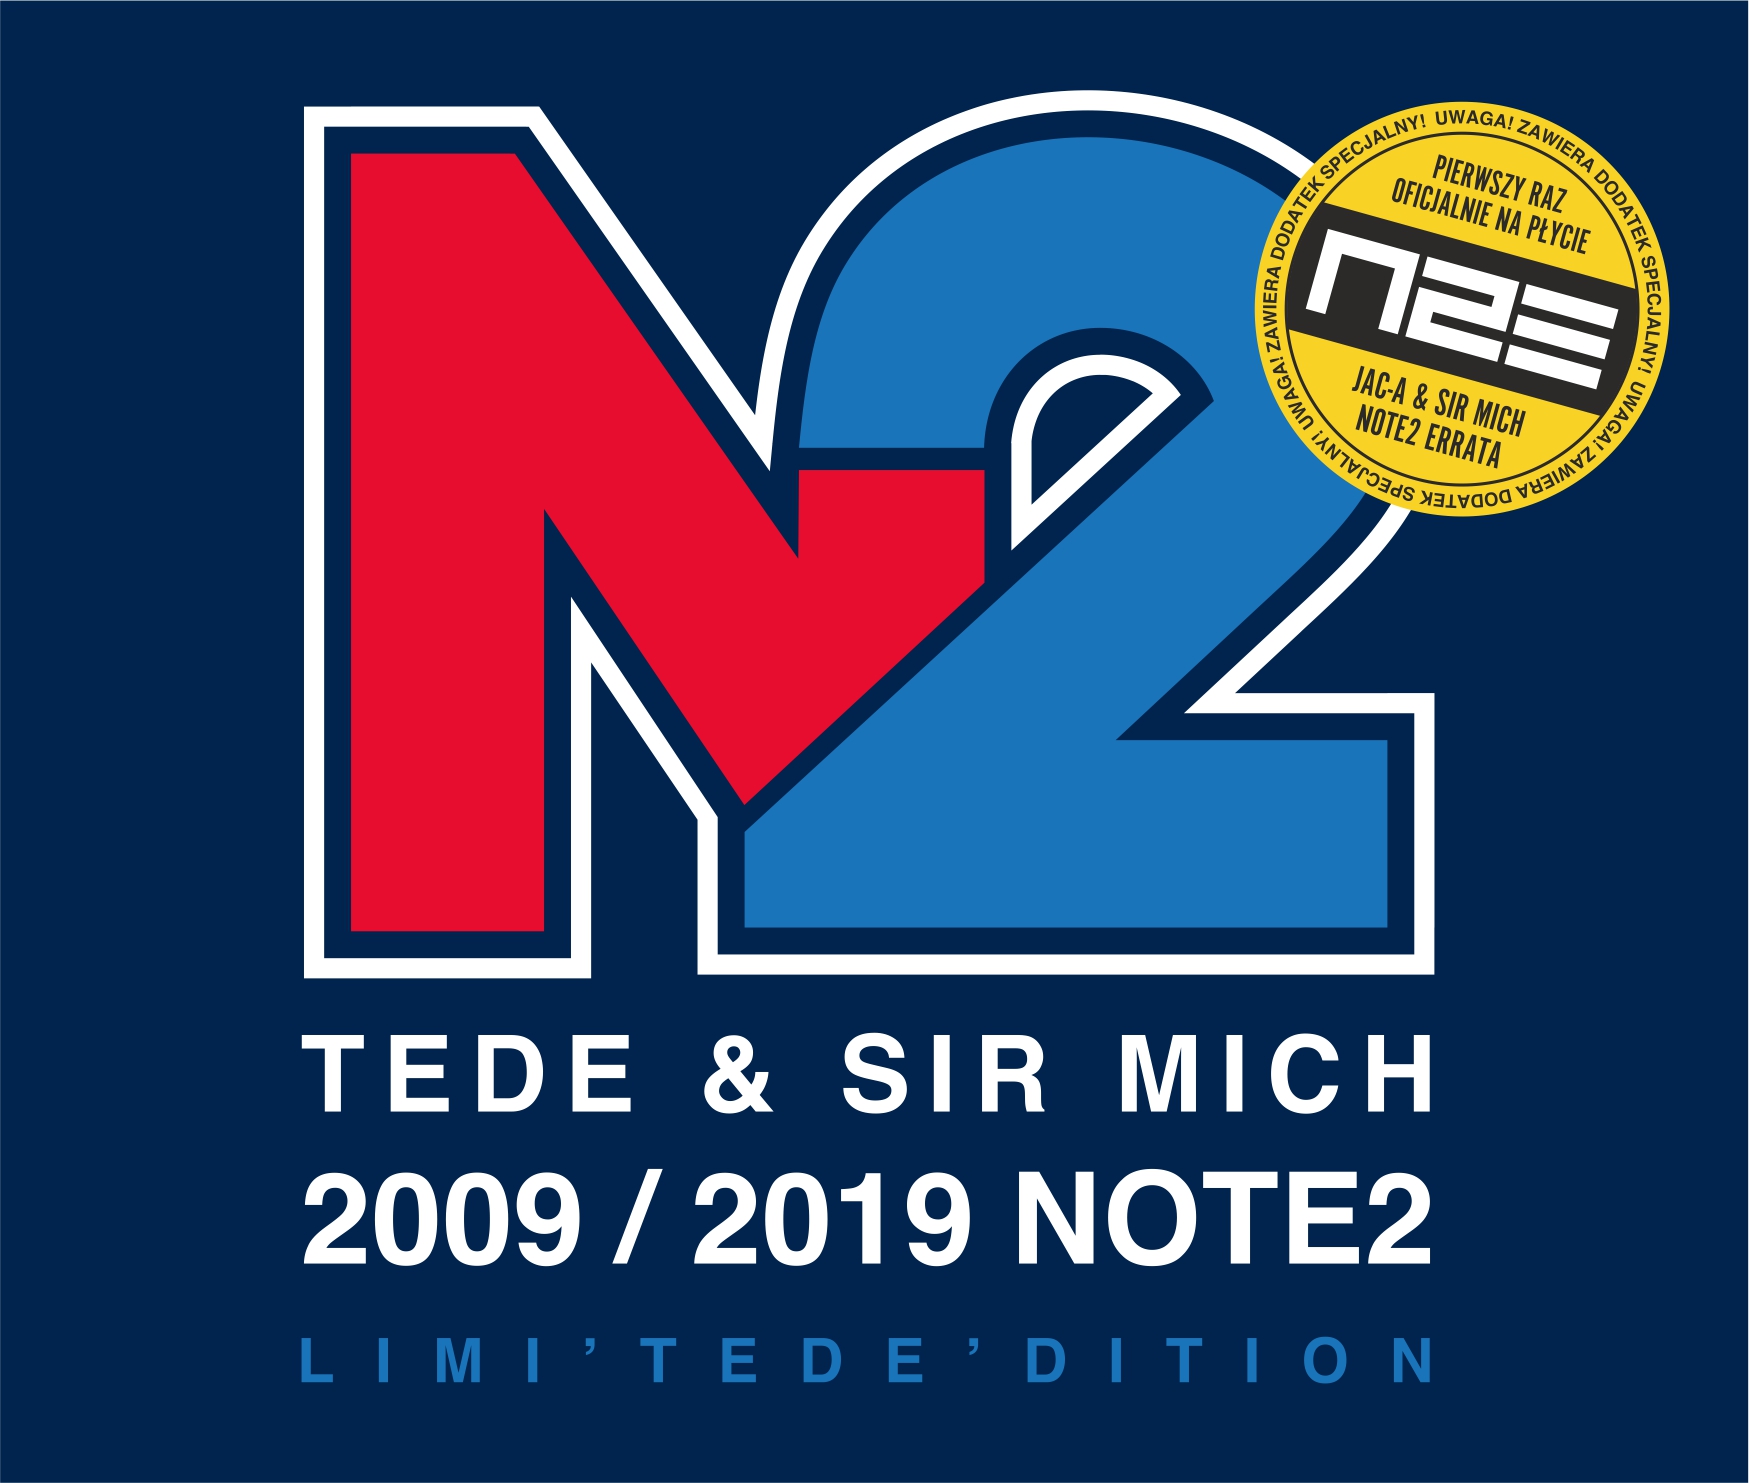 Tede & Sir Mich Note2 2009-2019: Jubileuszowa reedycja płyty z minialbumem  NOTE2 Errata!